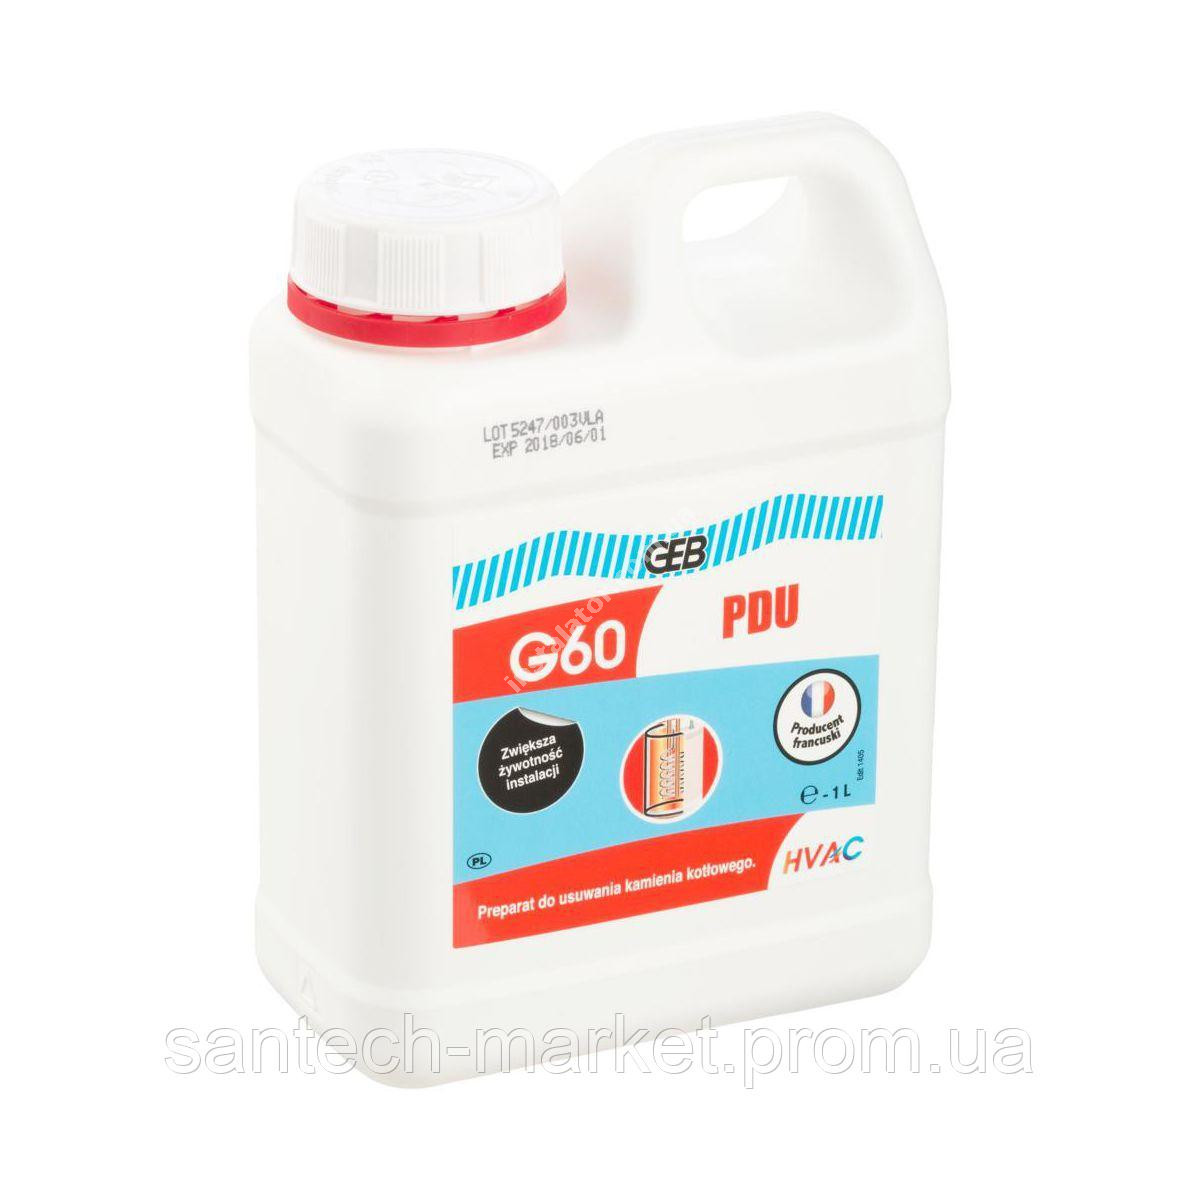 GEB G60 Рідина для чистки котлів 10л